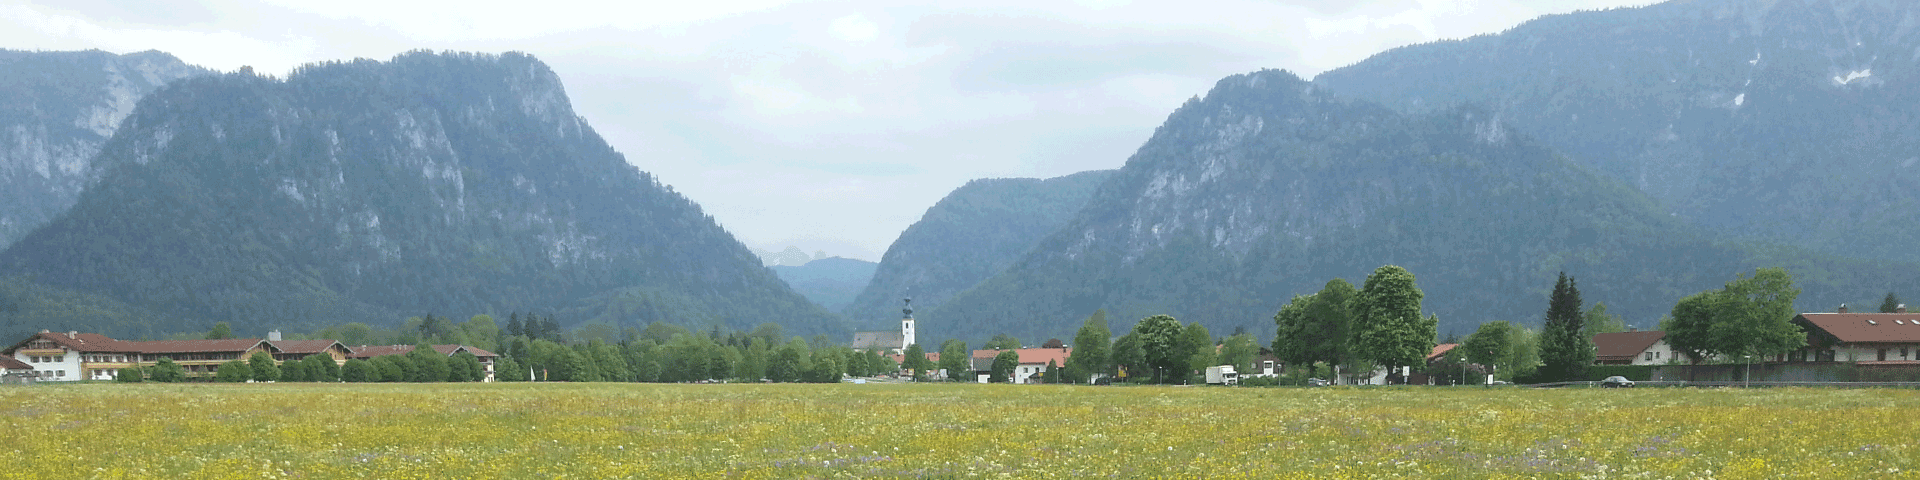 Ferienwohnung Lambertz in Inzell